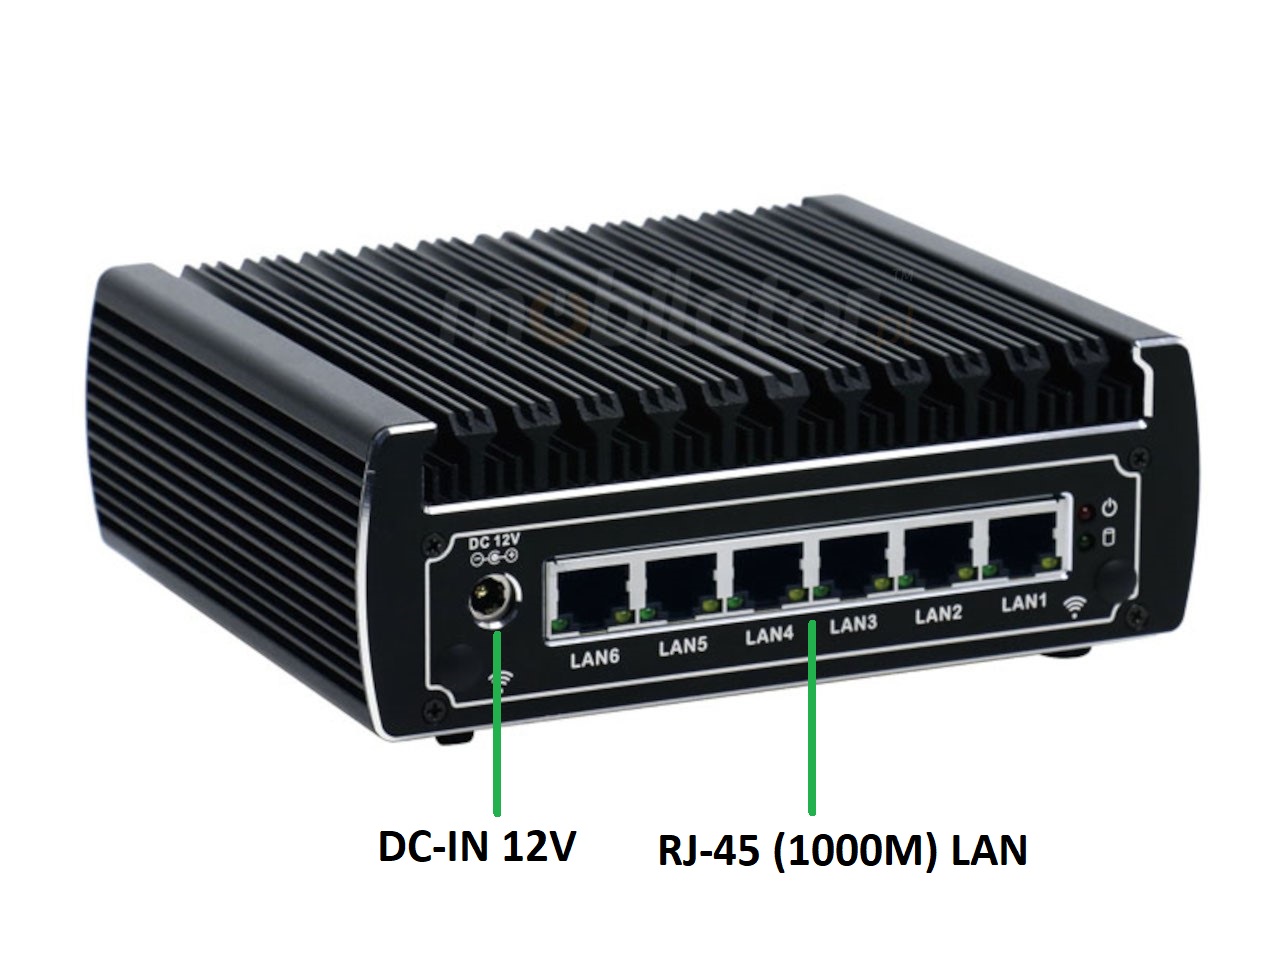   IBOX N133 v.6, WIFI, BLUETOOTH, zcza ty, SSD, DDR4, przemysowy, may, szybki, niezawodny, fanless, industrial, small, LAN, INTEL i3